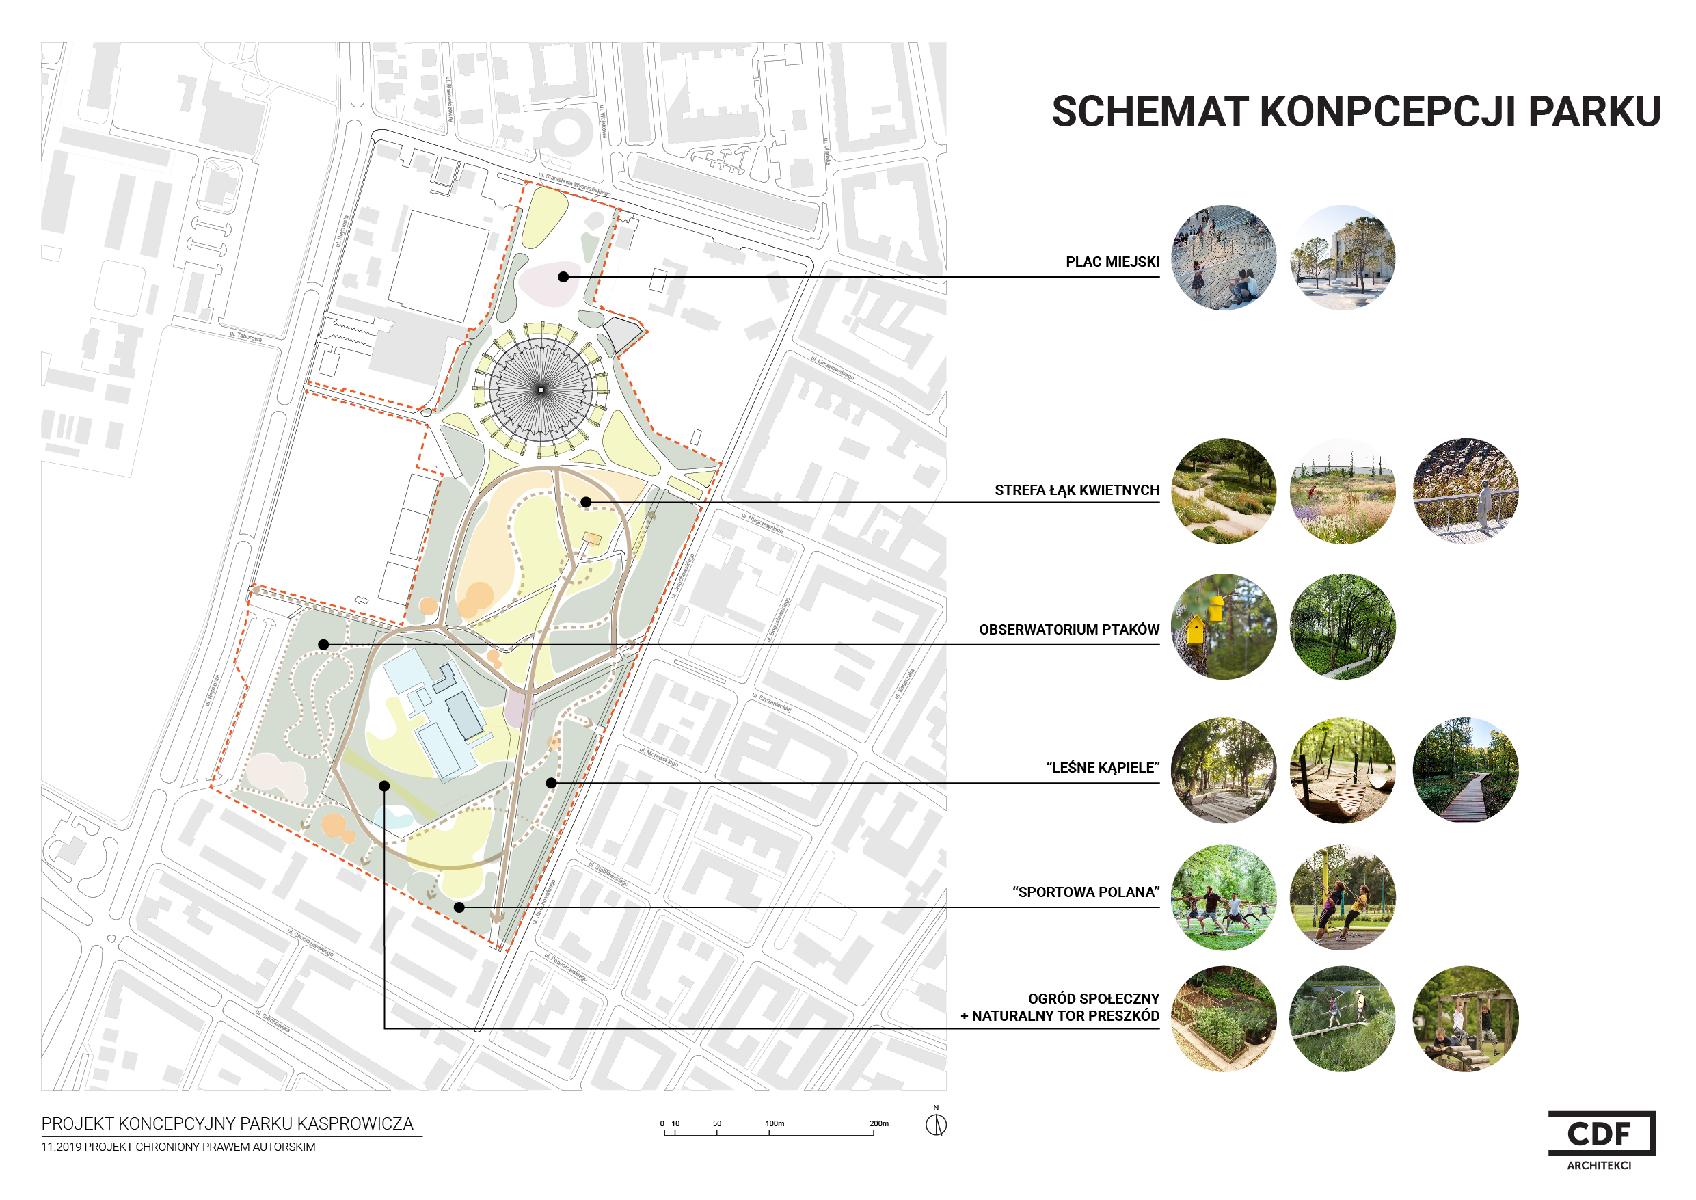 Zgodnie z propozycją w parku miałoby zostać wydzielonych kilka głównych stref - grafika artykułu